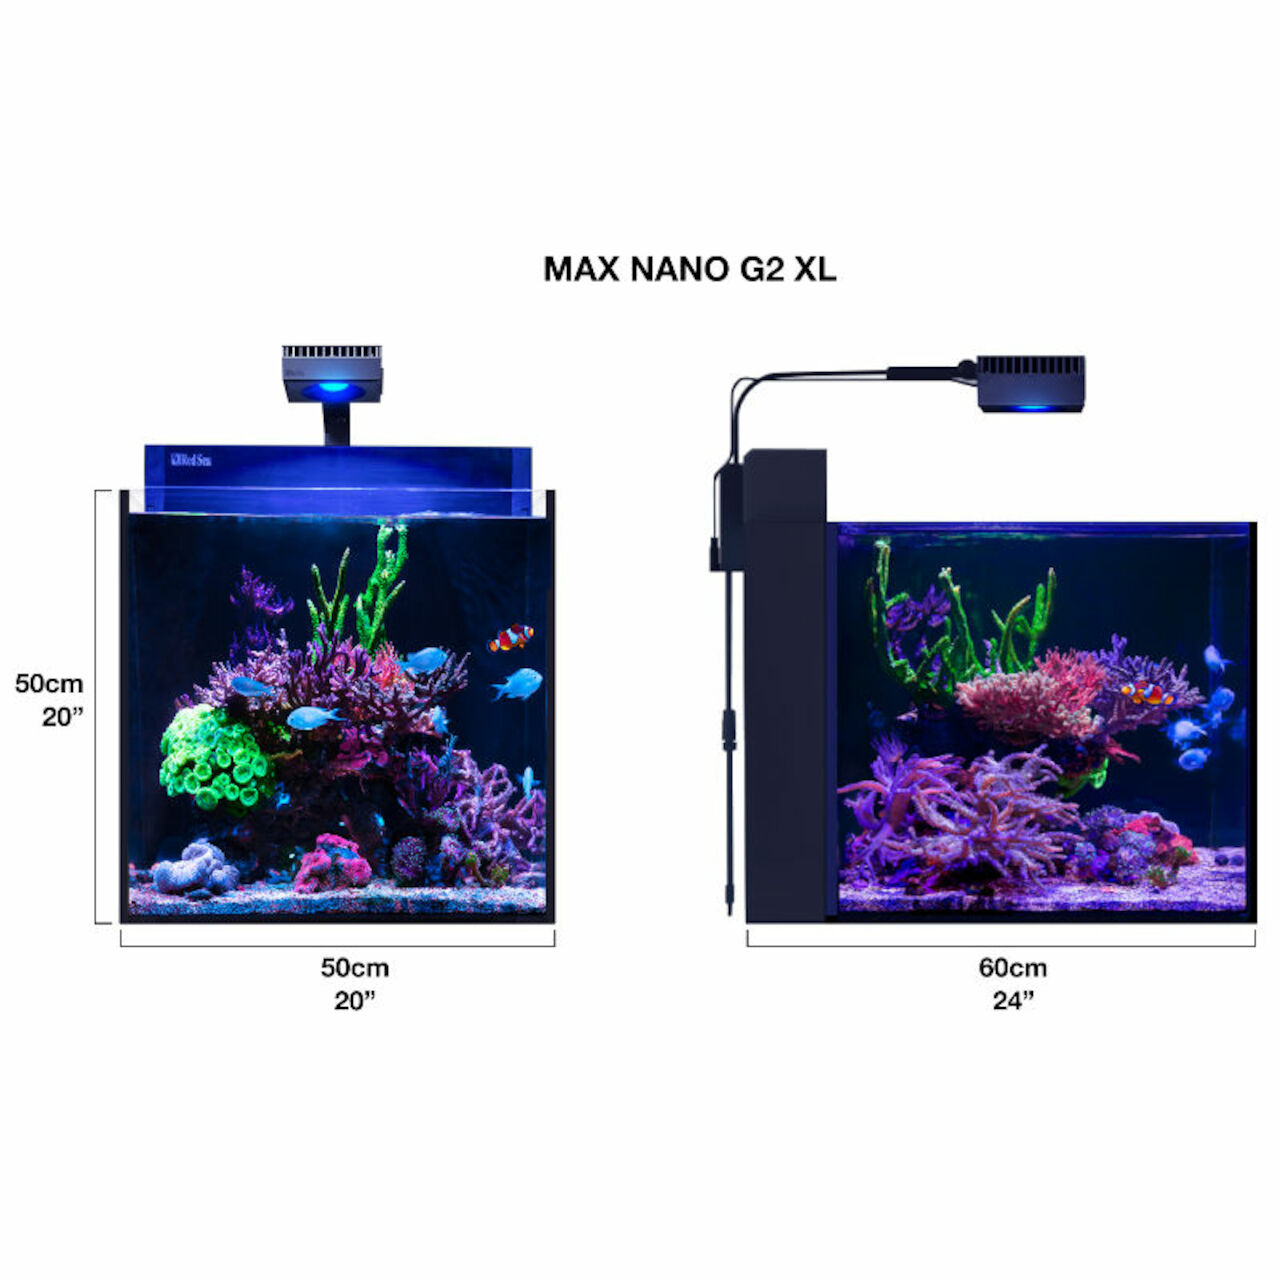 Red Sea Max Nano G2 XL weiss